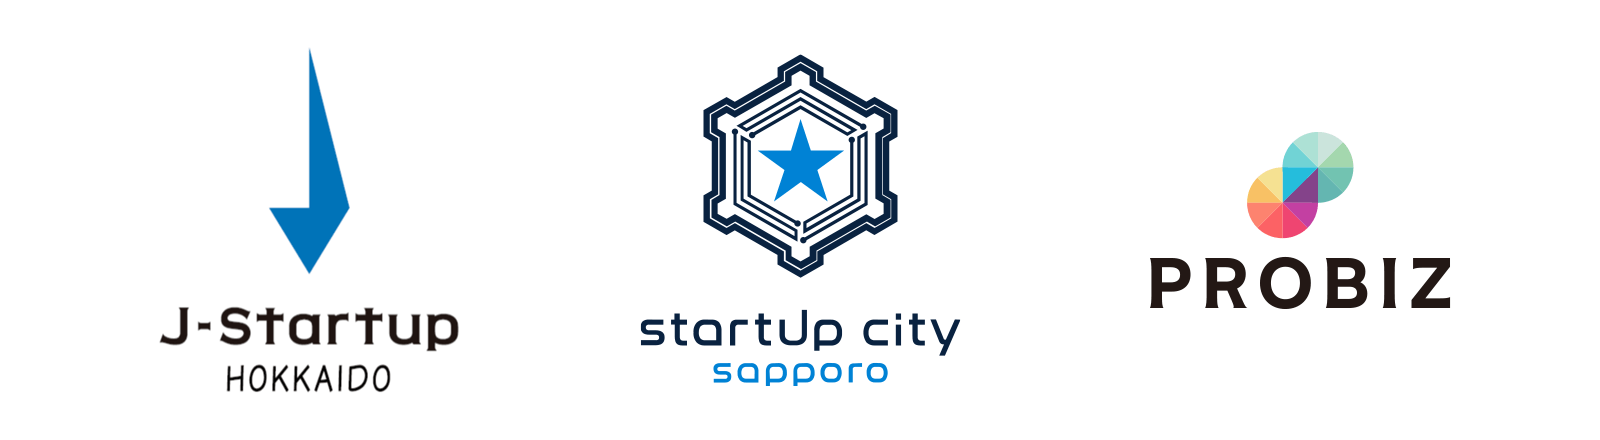 株式会社プロビズ J-Startup HOKKAIDO STARTUP CITY SAPPORO